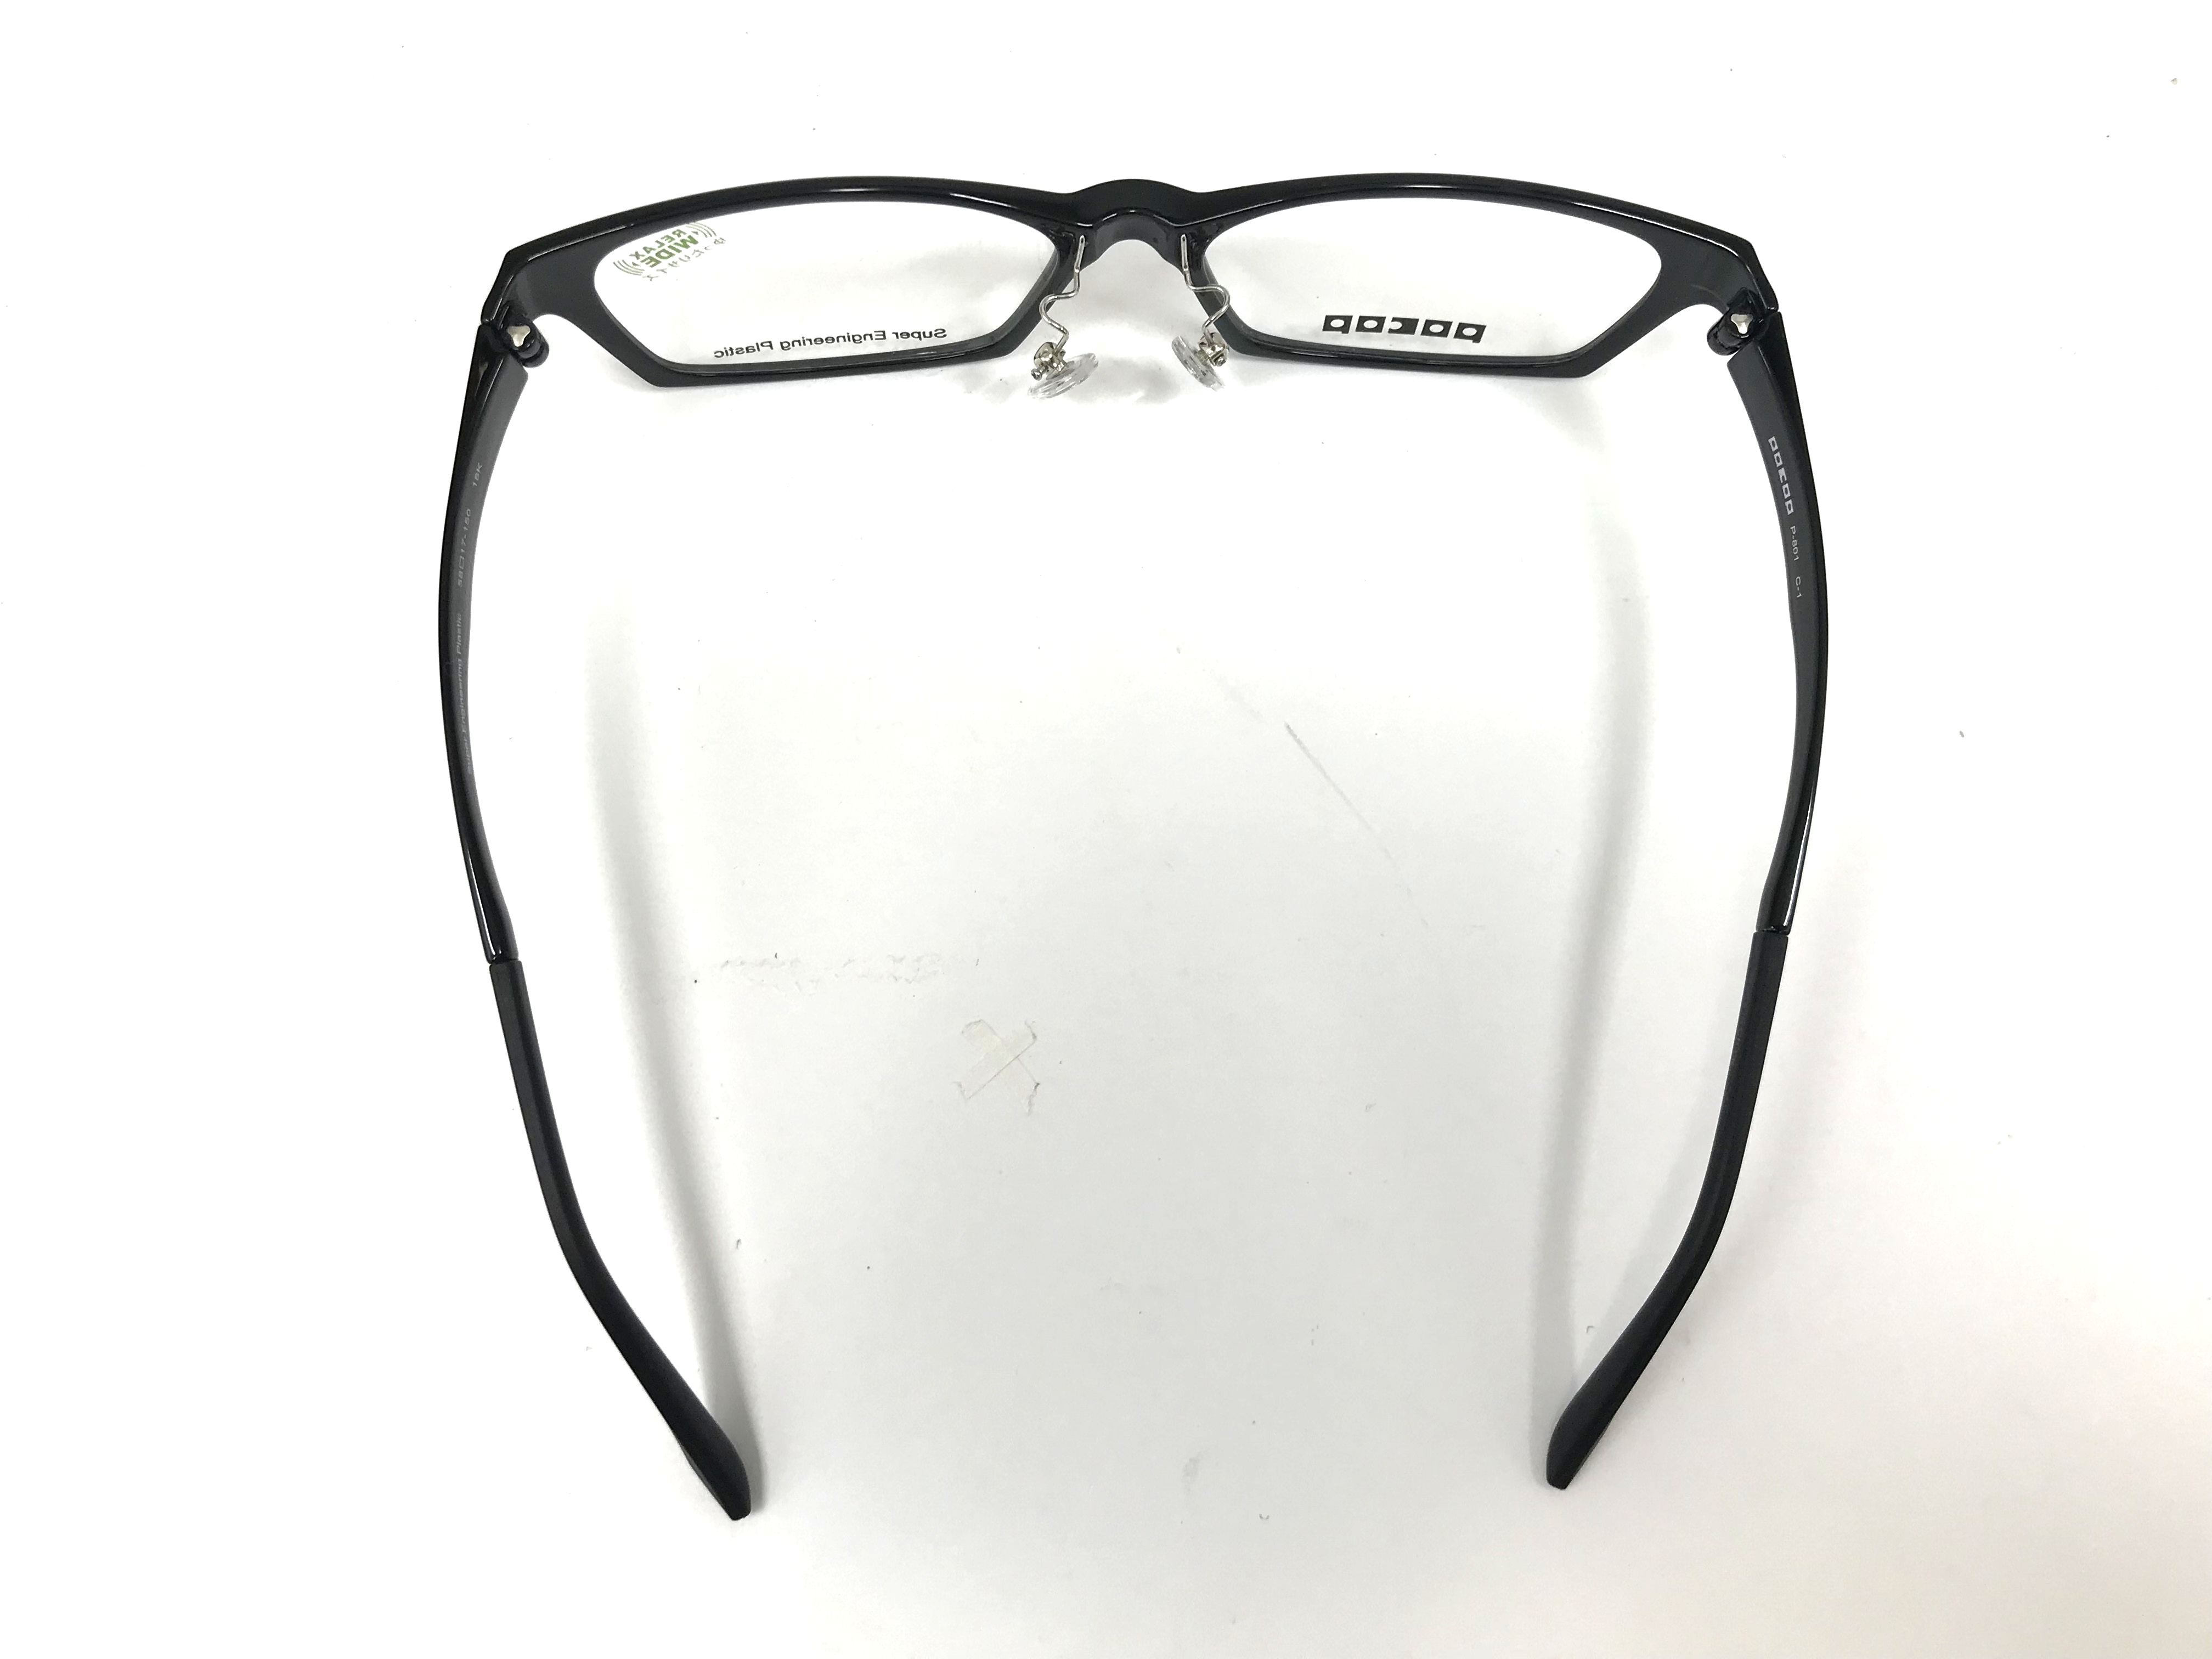 ワイドな顔幅の男性も快適 スタイリッシュにハマる ゆったりサイズのメガネ Pocop Relax Wide を12月12日 水 発売 愛眼株式会社のプレスリリース